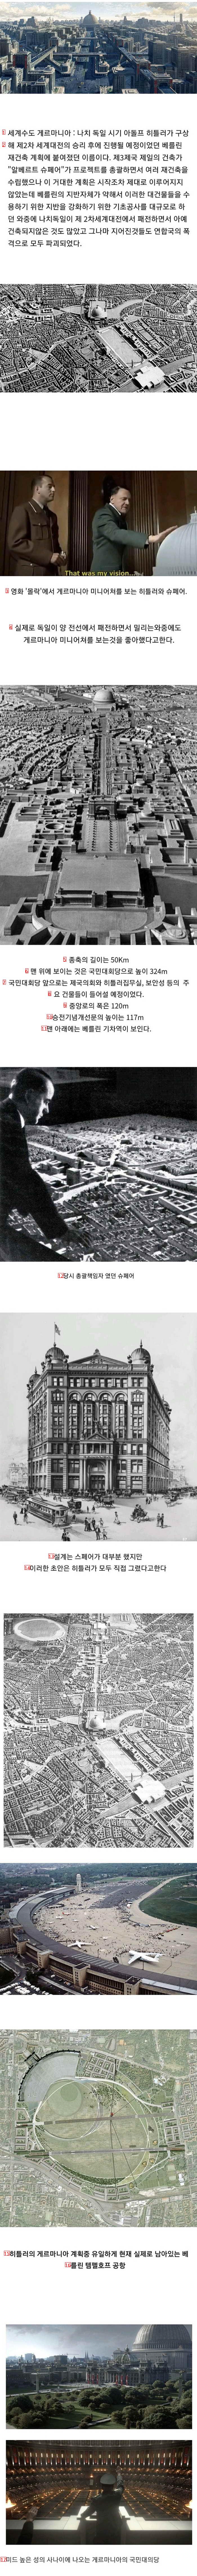 히틀러가 계획했던 거대도시 프로젝트